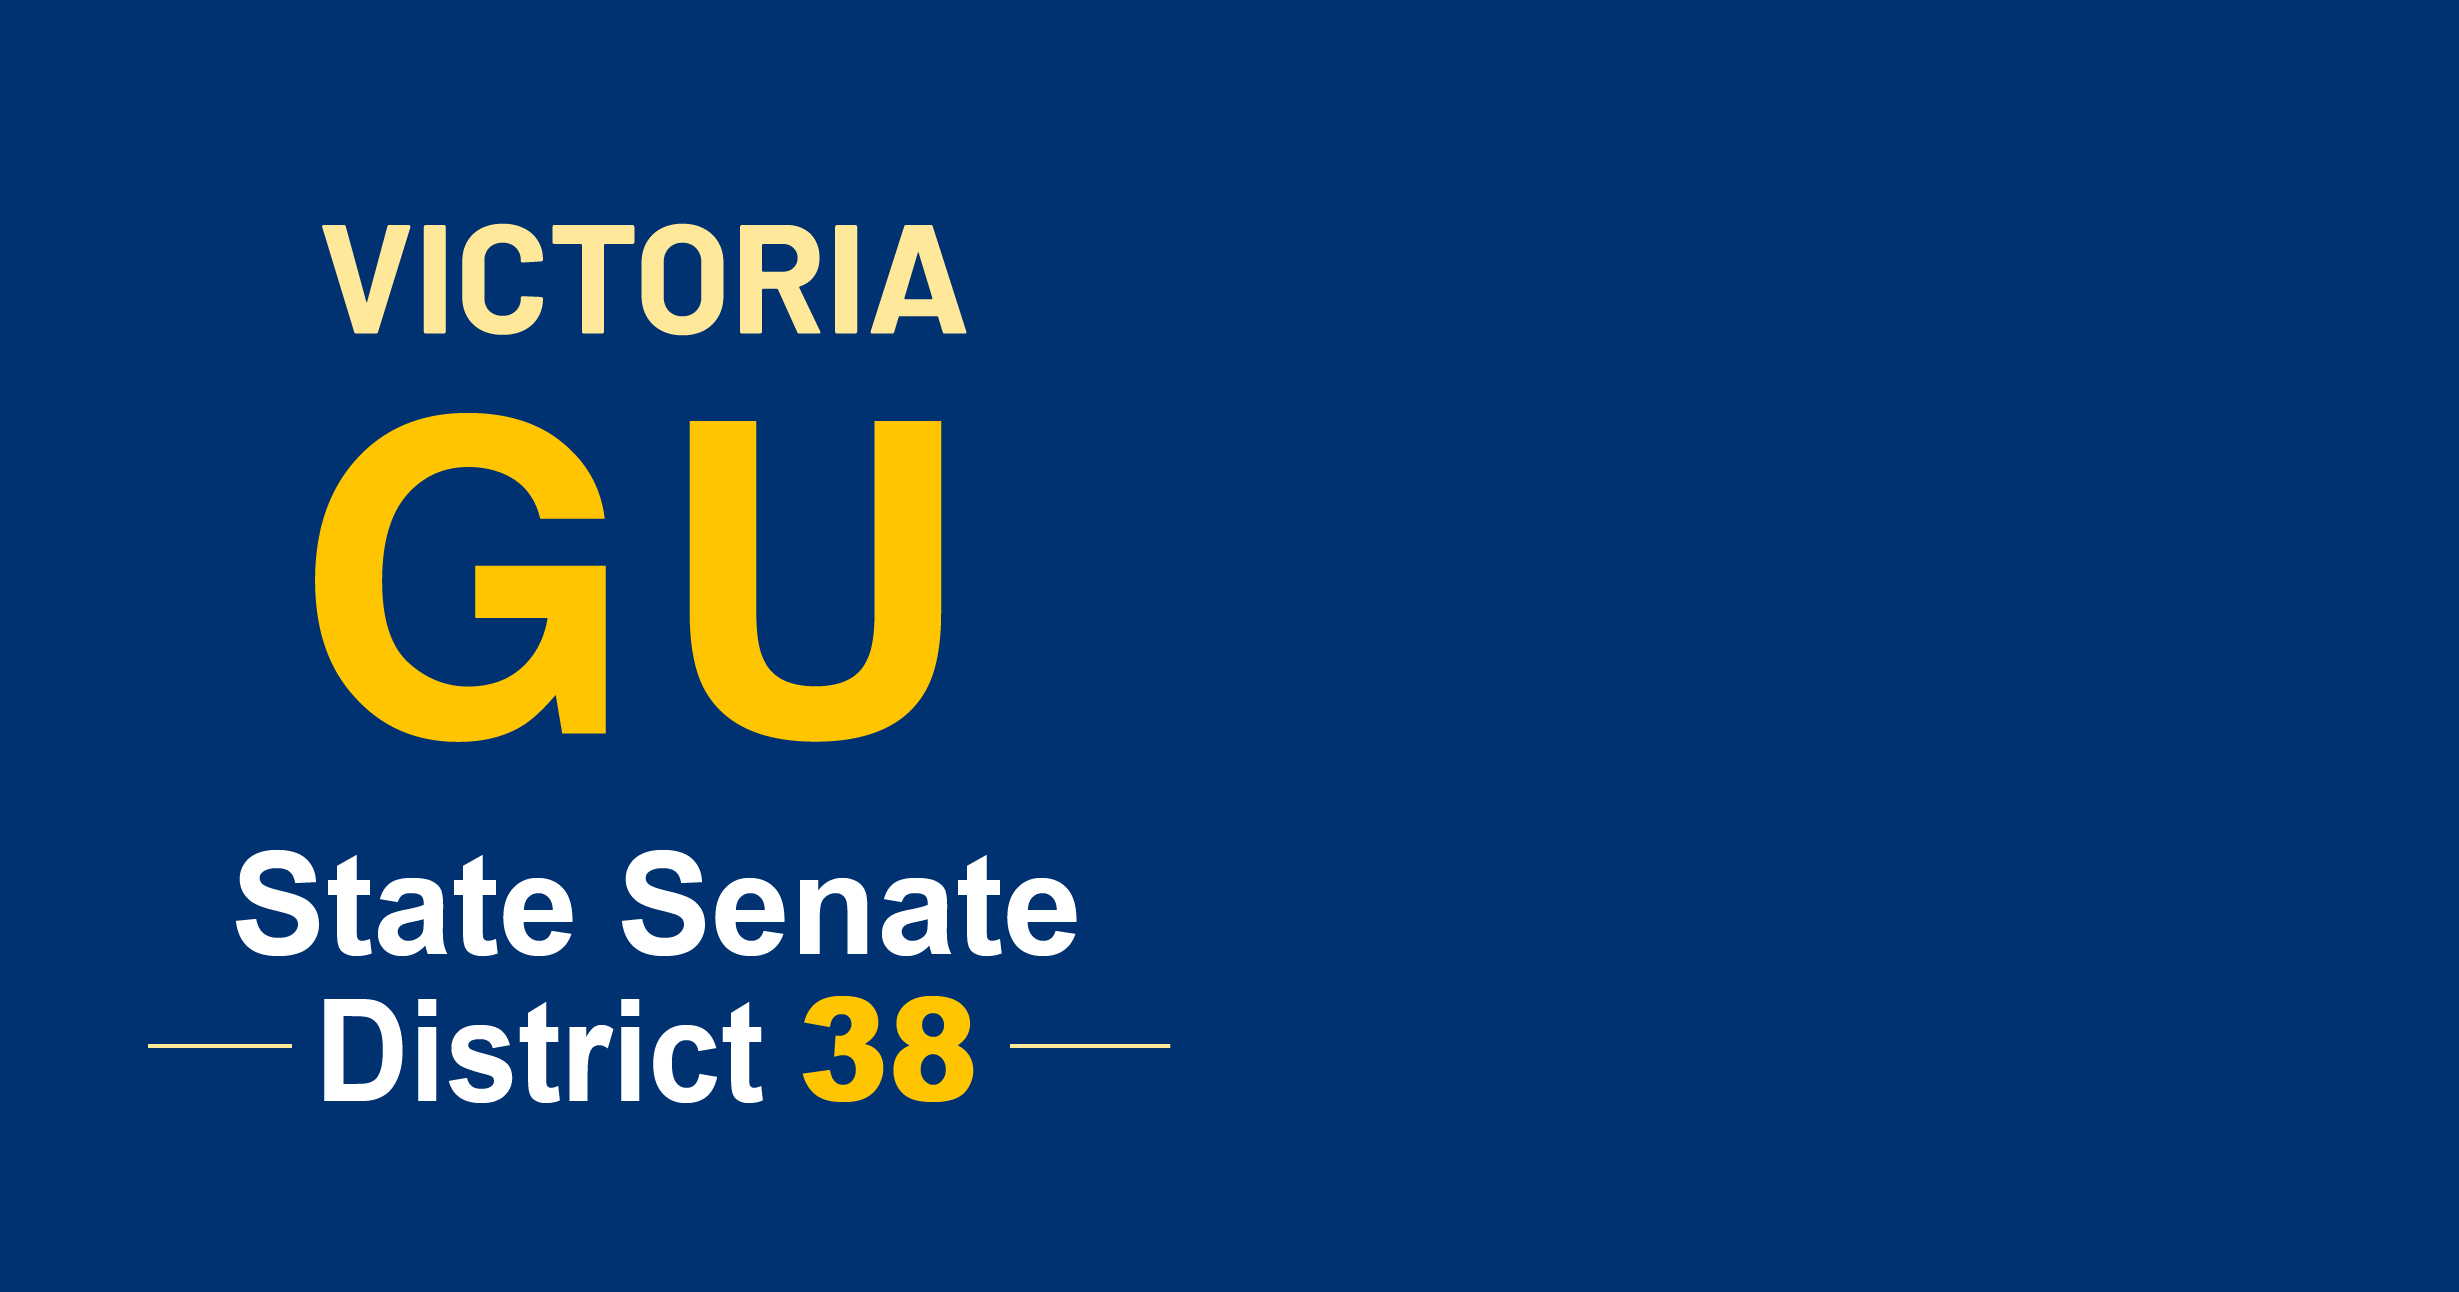 RI State Senator Victoria Gu, District 38